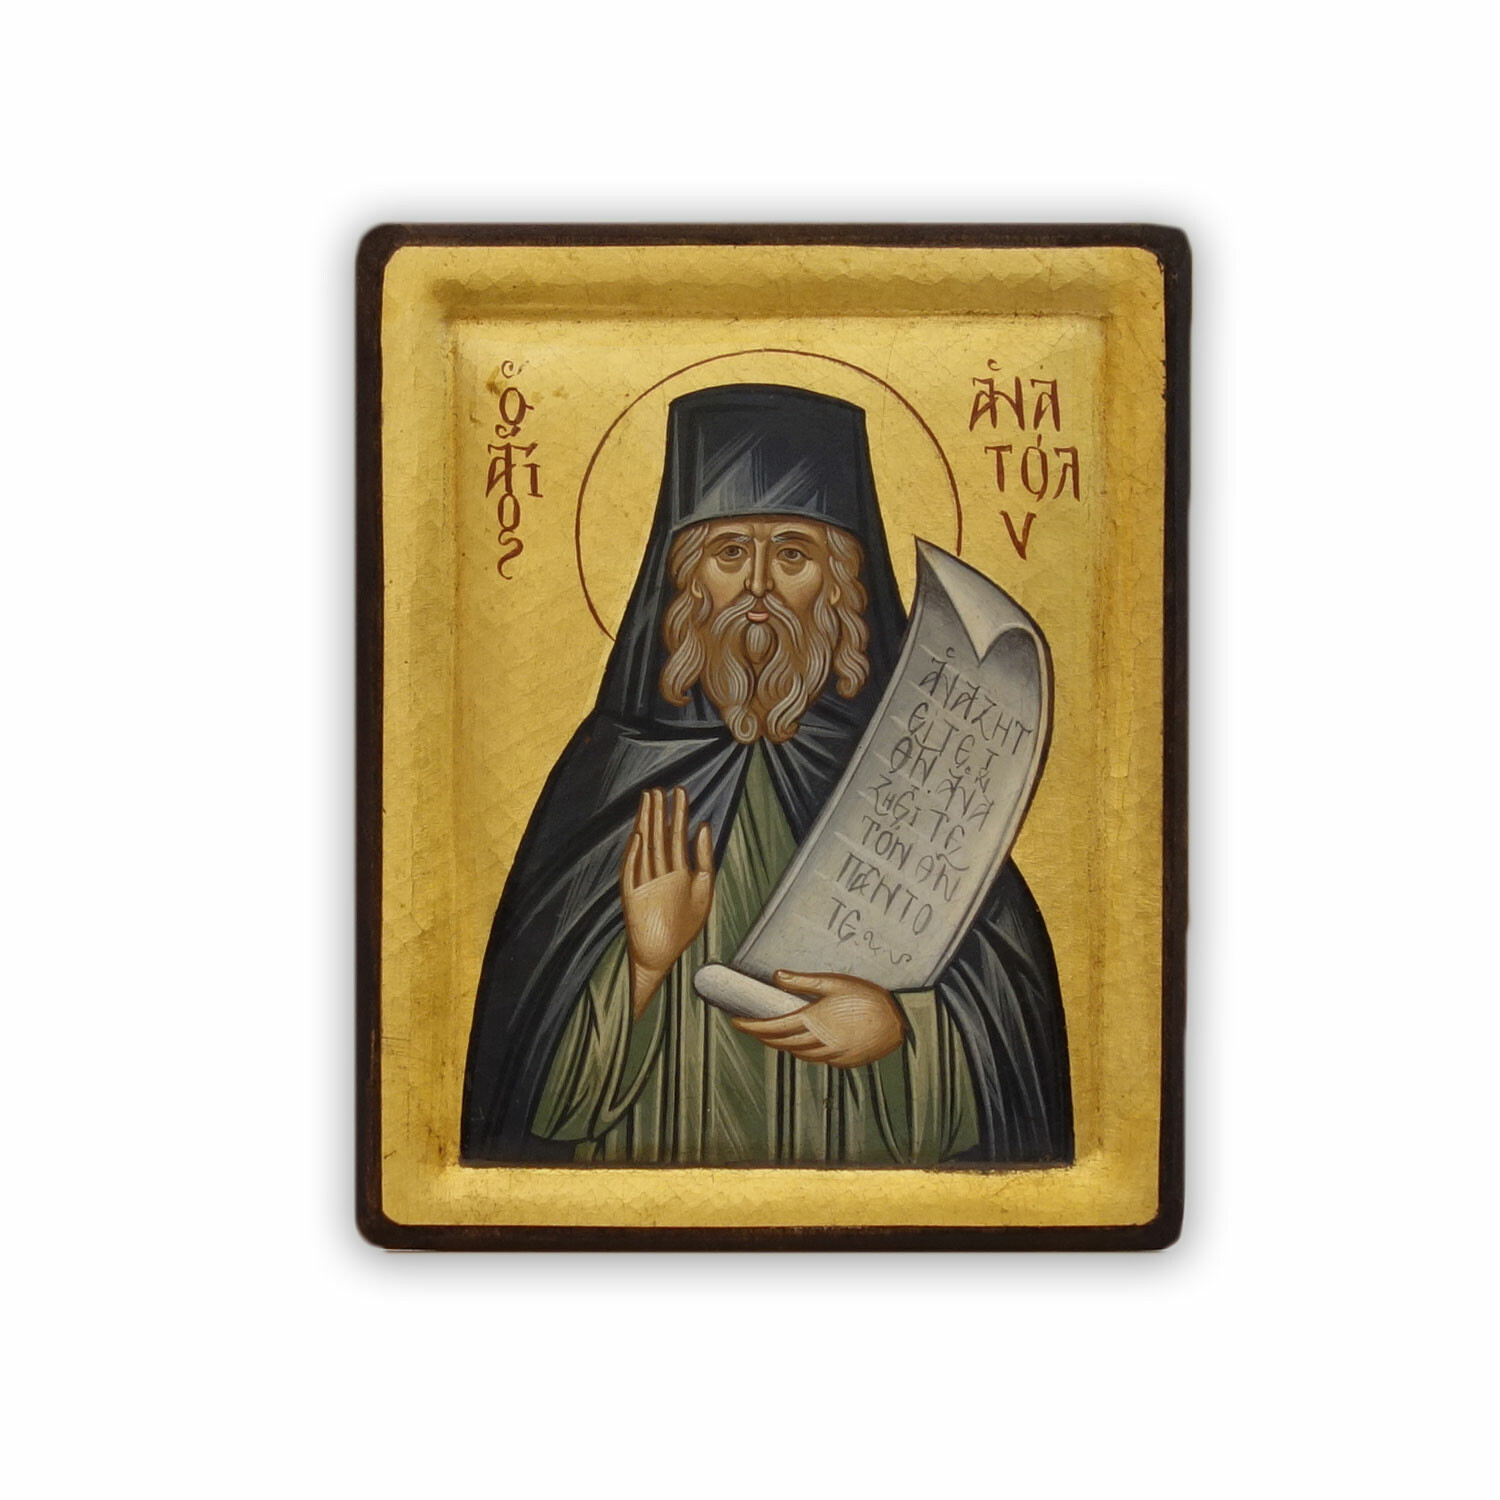 Anatolius of Constantinople